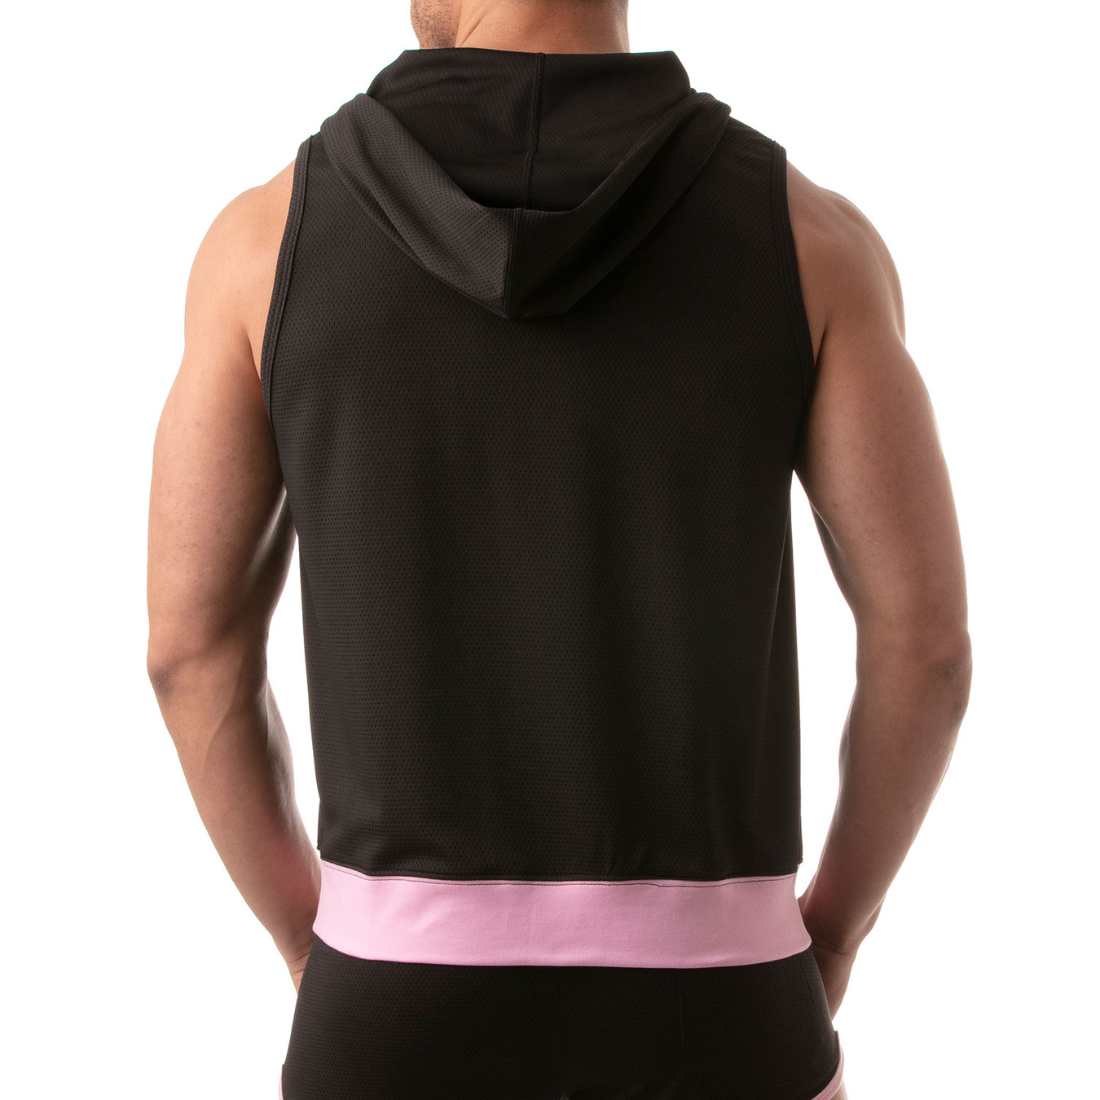 Zwarte hoodie zonder mouwen met roze accenten, ontworpen door het Franse modehuis Tof Paris en te koop bij Flavourez.